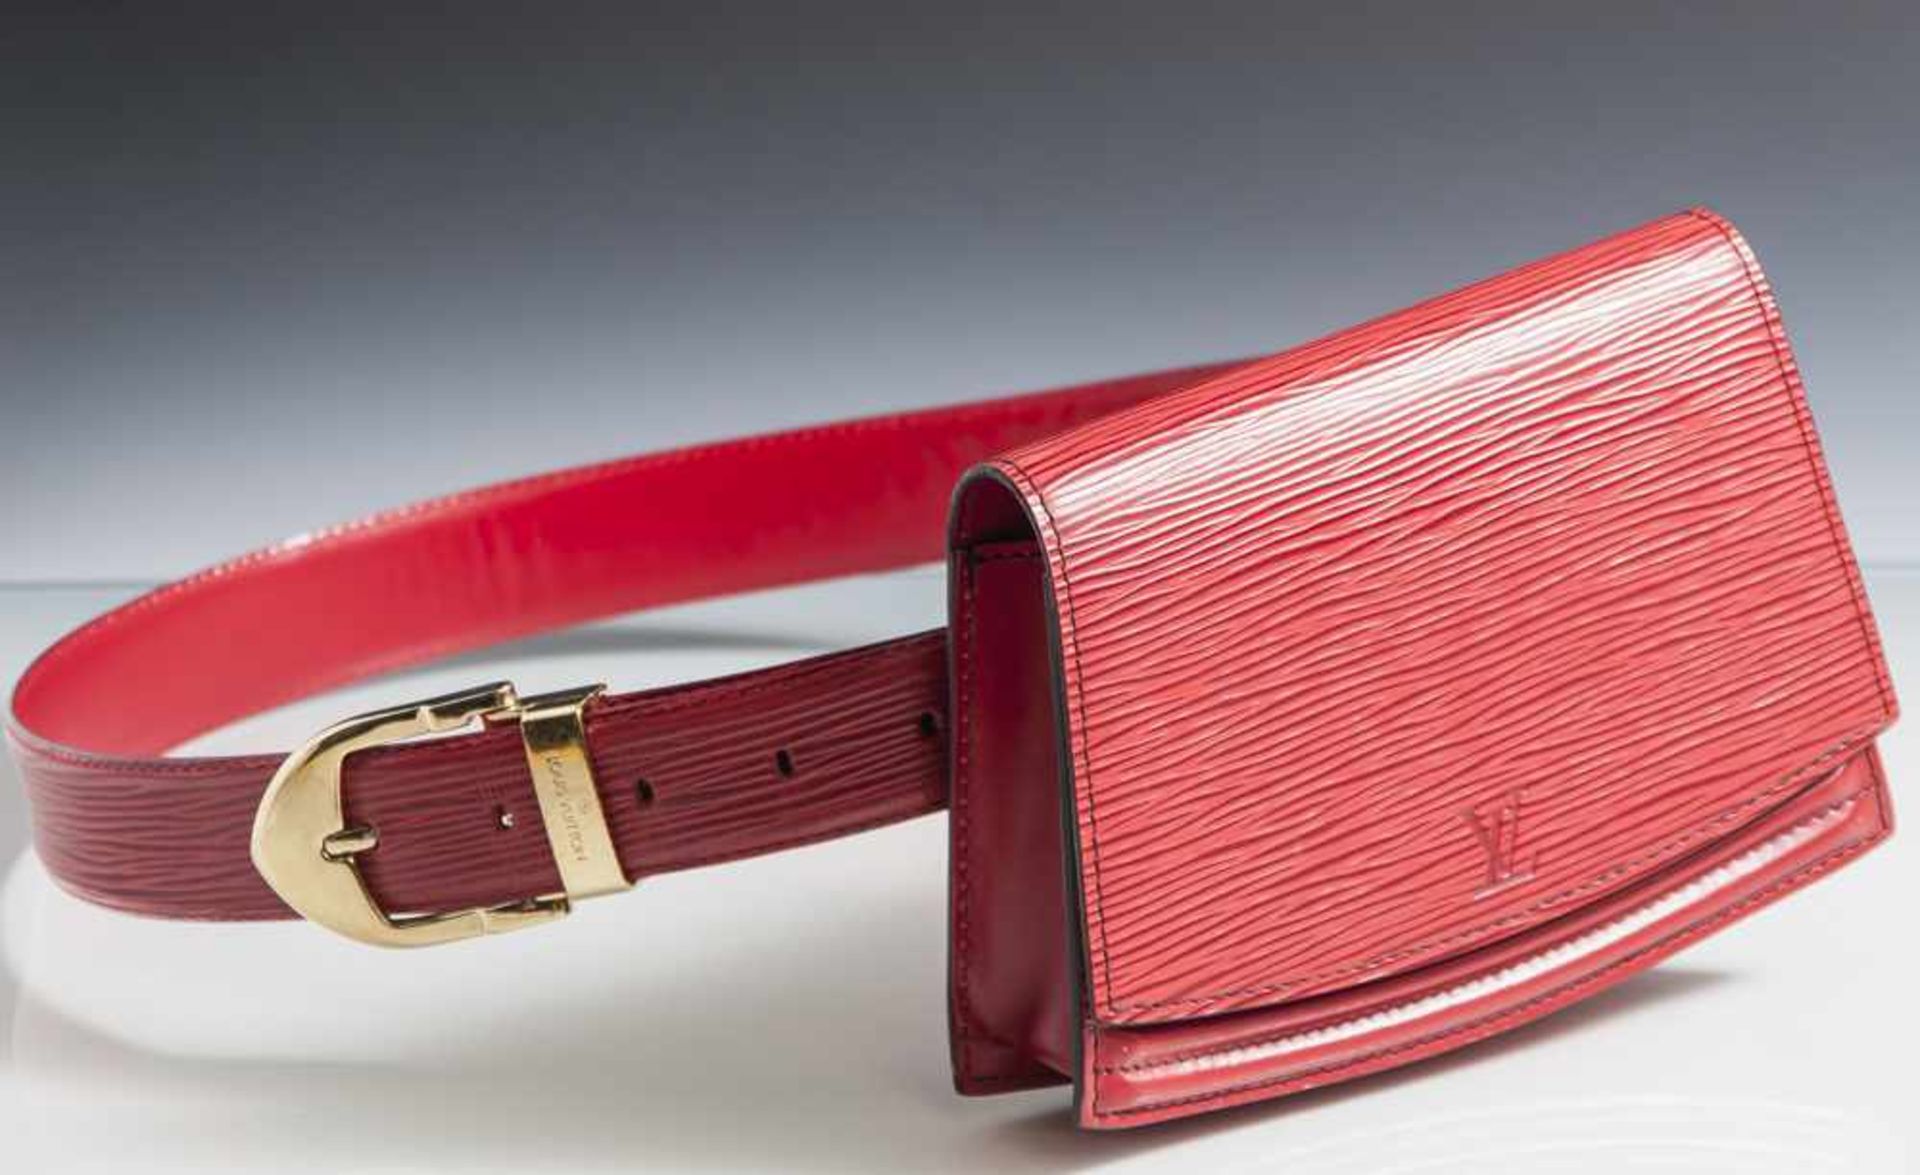 Louis Vuitton Gürteltasche, wohl 1990er Jahre, rot, Tasche innen Nr. "V.I. 0991", Gürtel Nr. "